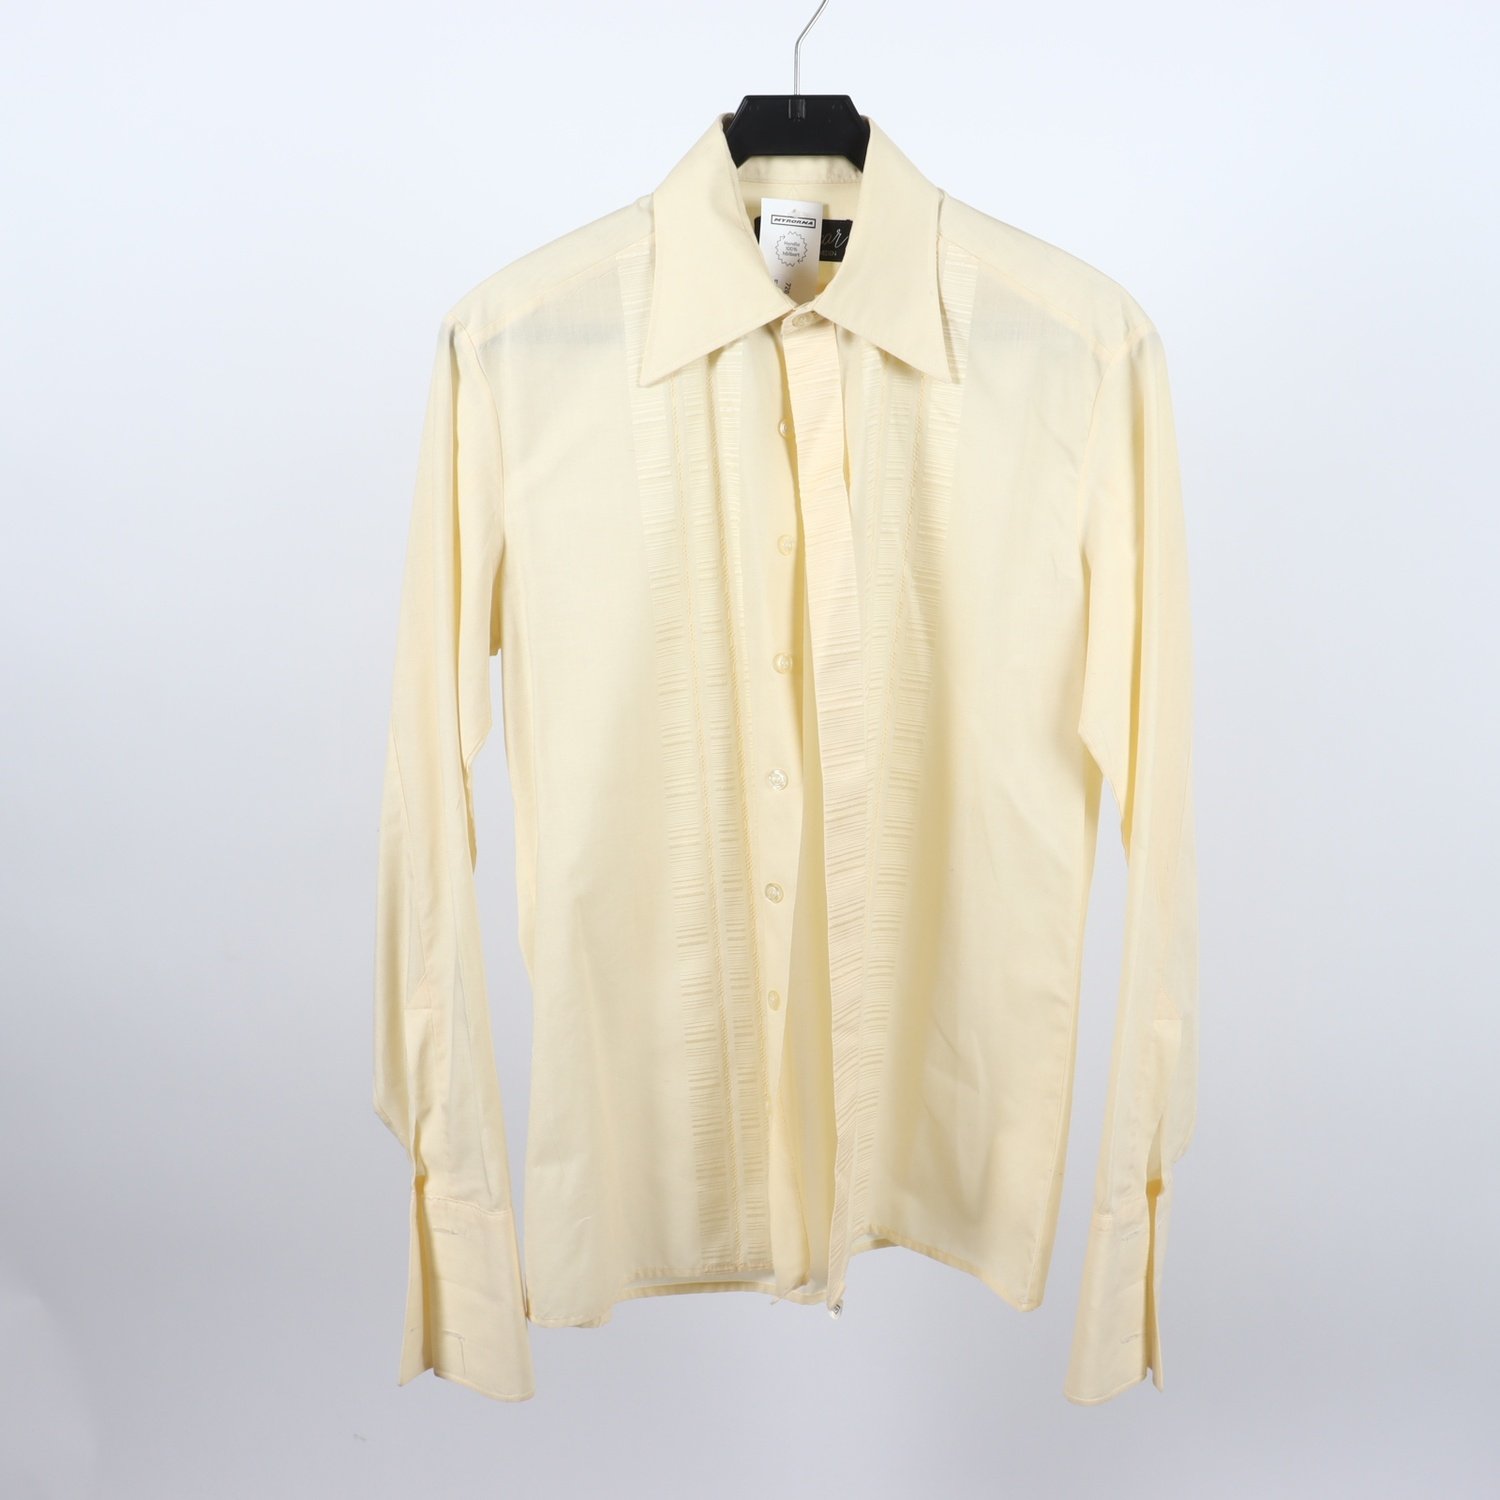 Skjorta, Design Oscar, gul, stl.B40